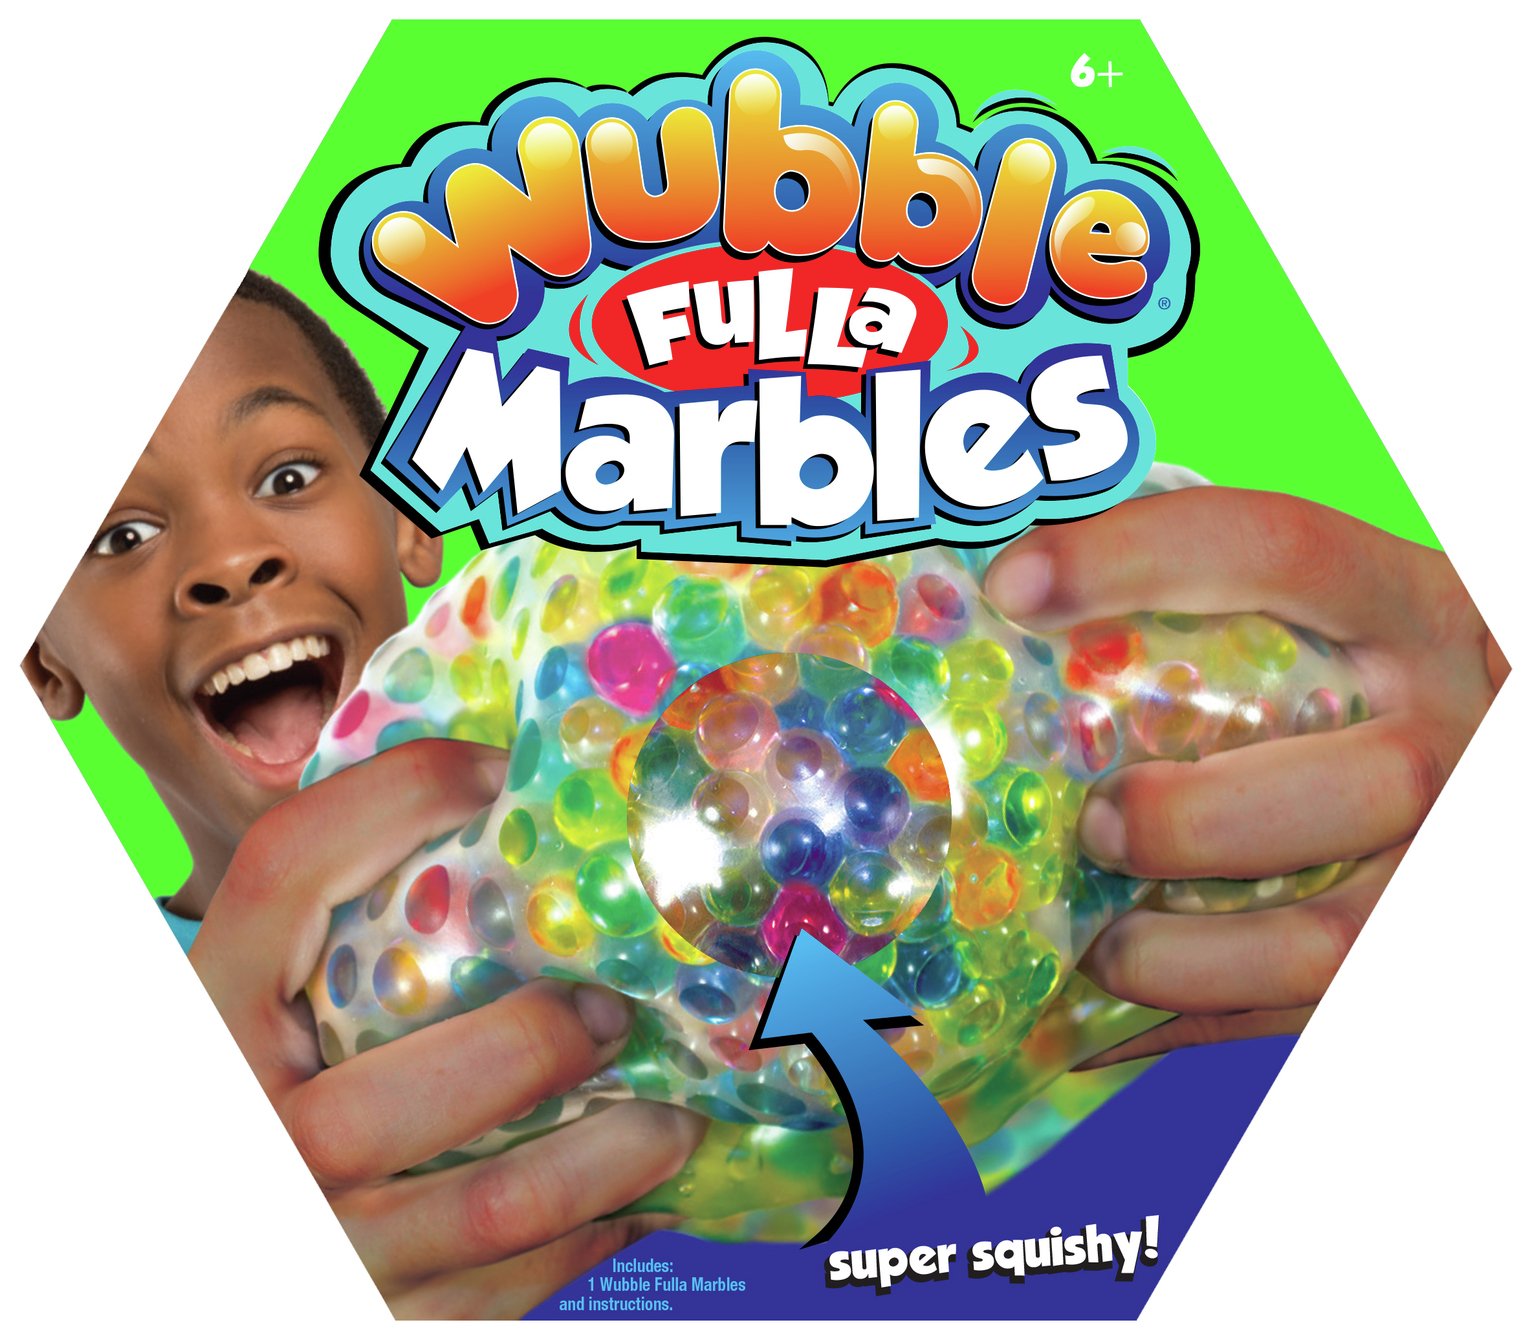 Wubble Fulla Marbles Review